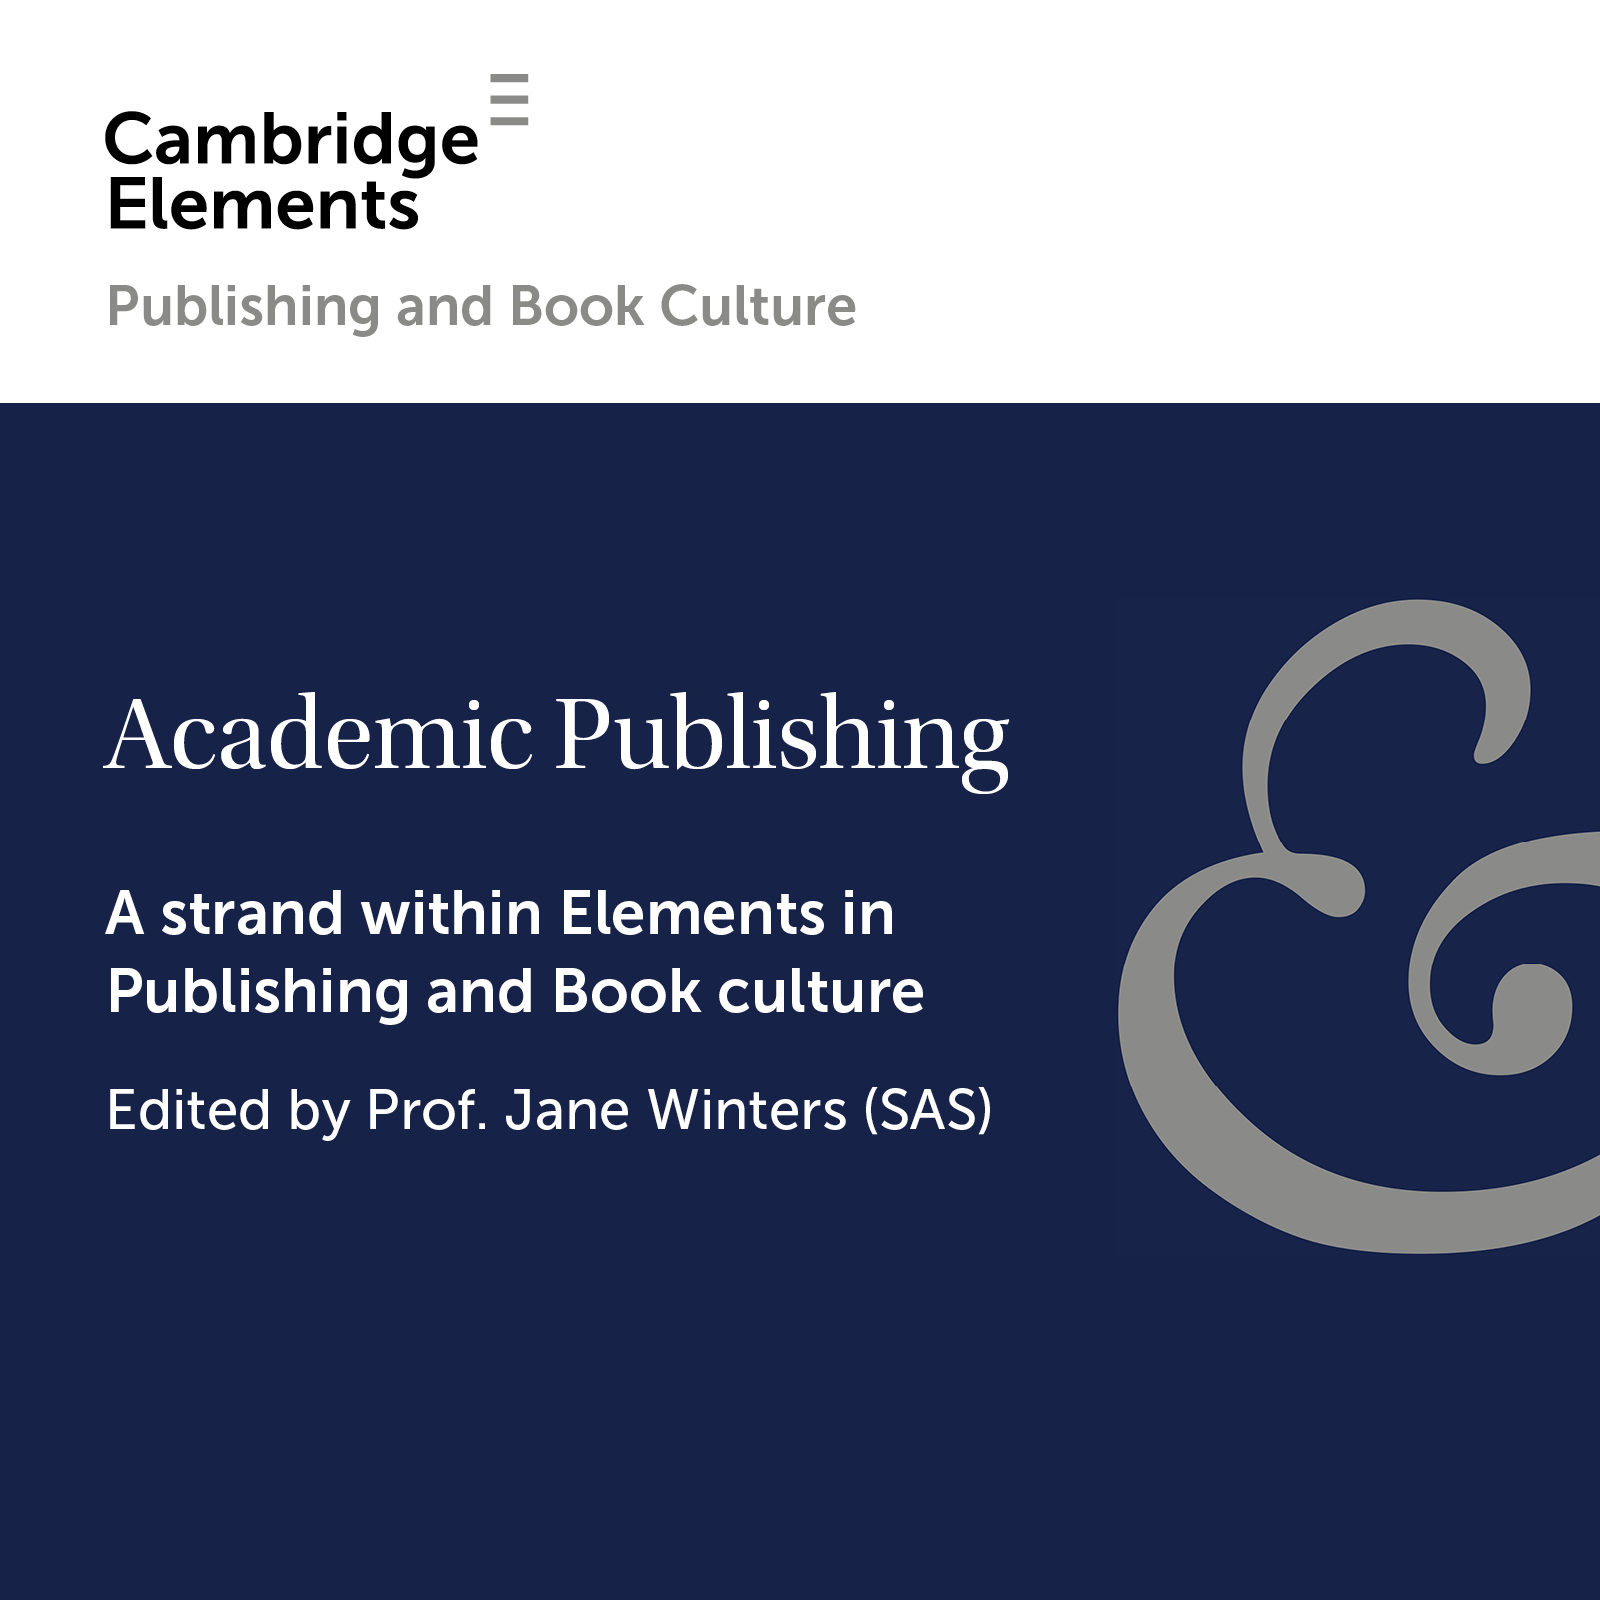 Academic Publishing